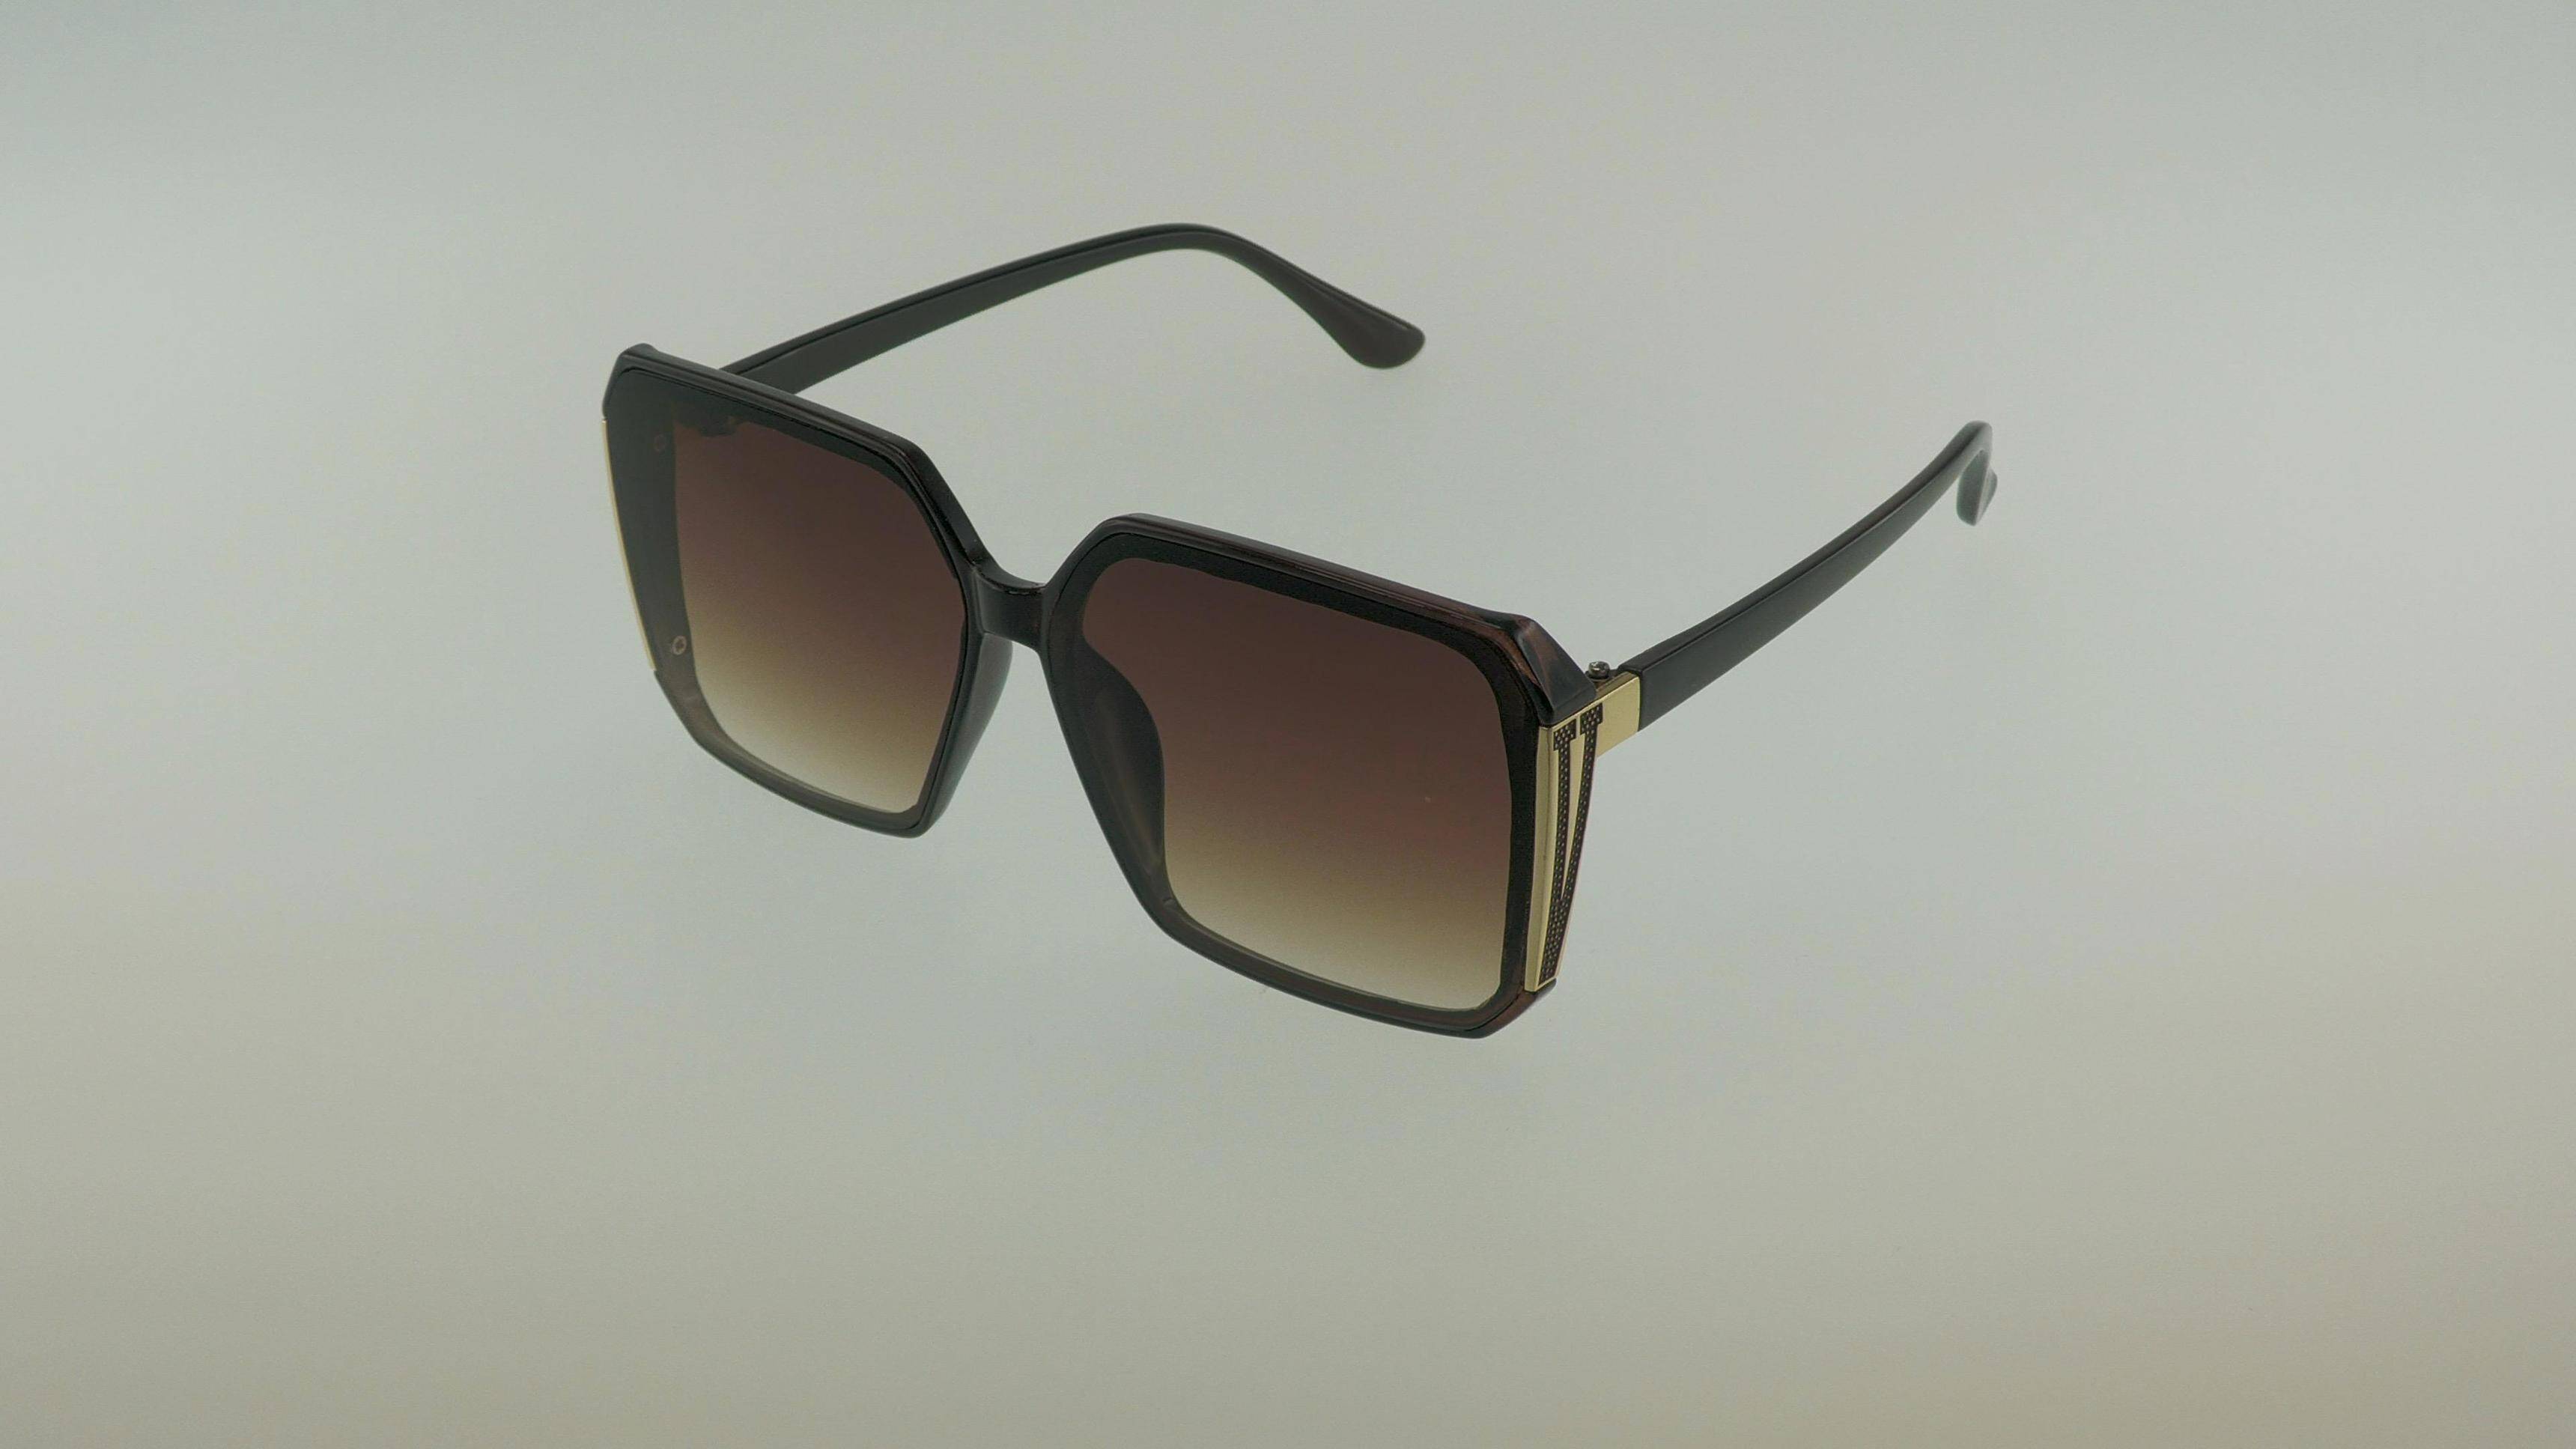 Okulary przeciwsłoneczne 263115 brown (Zdjęcie 1)